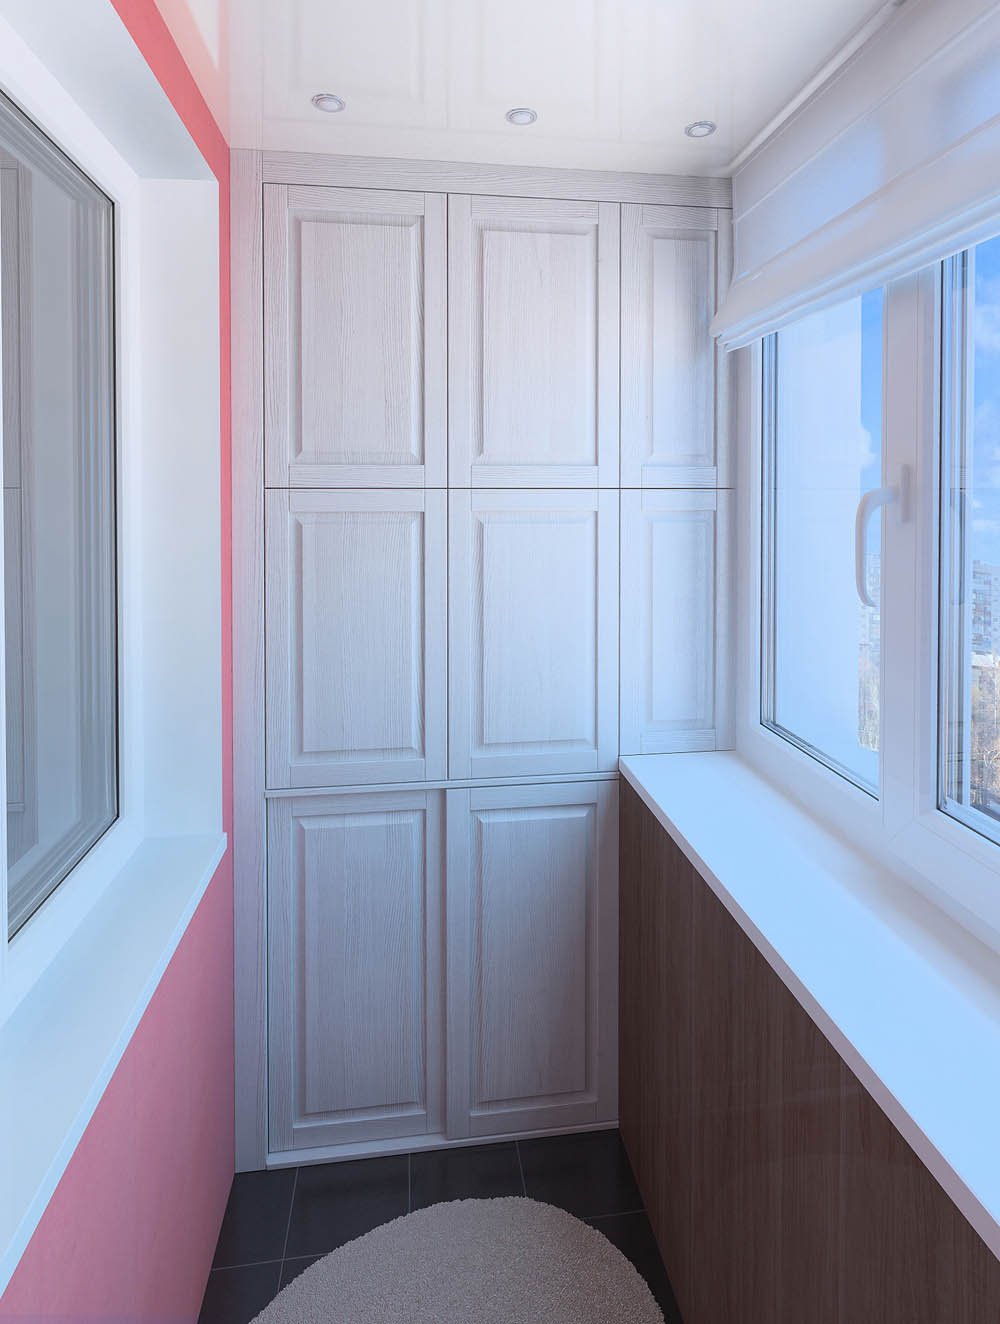 Теплое остекление балконов и лоджий - лучший вариант для квартиры